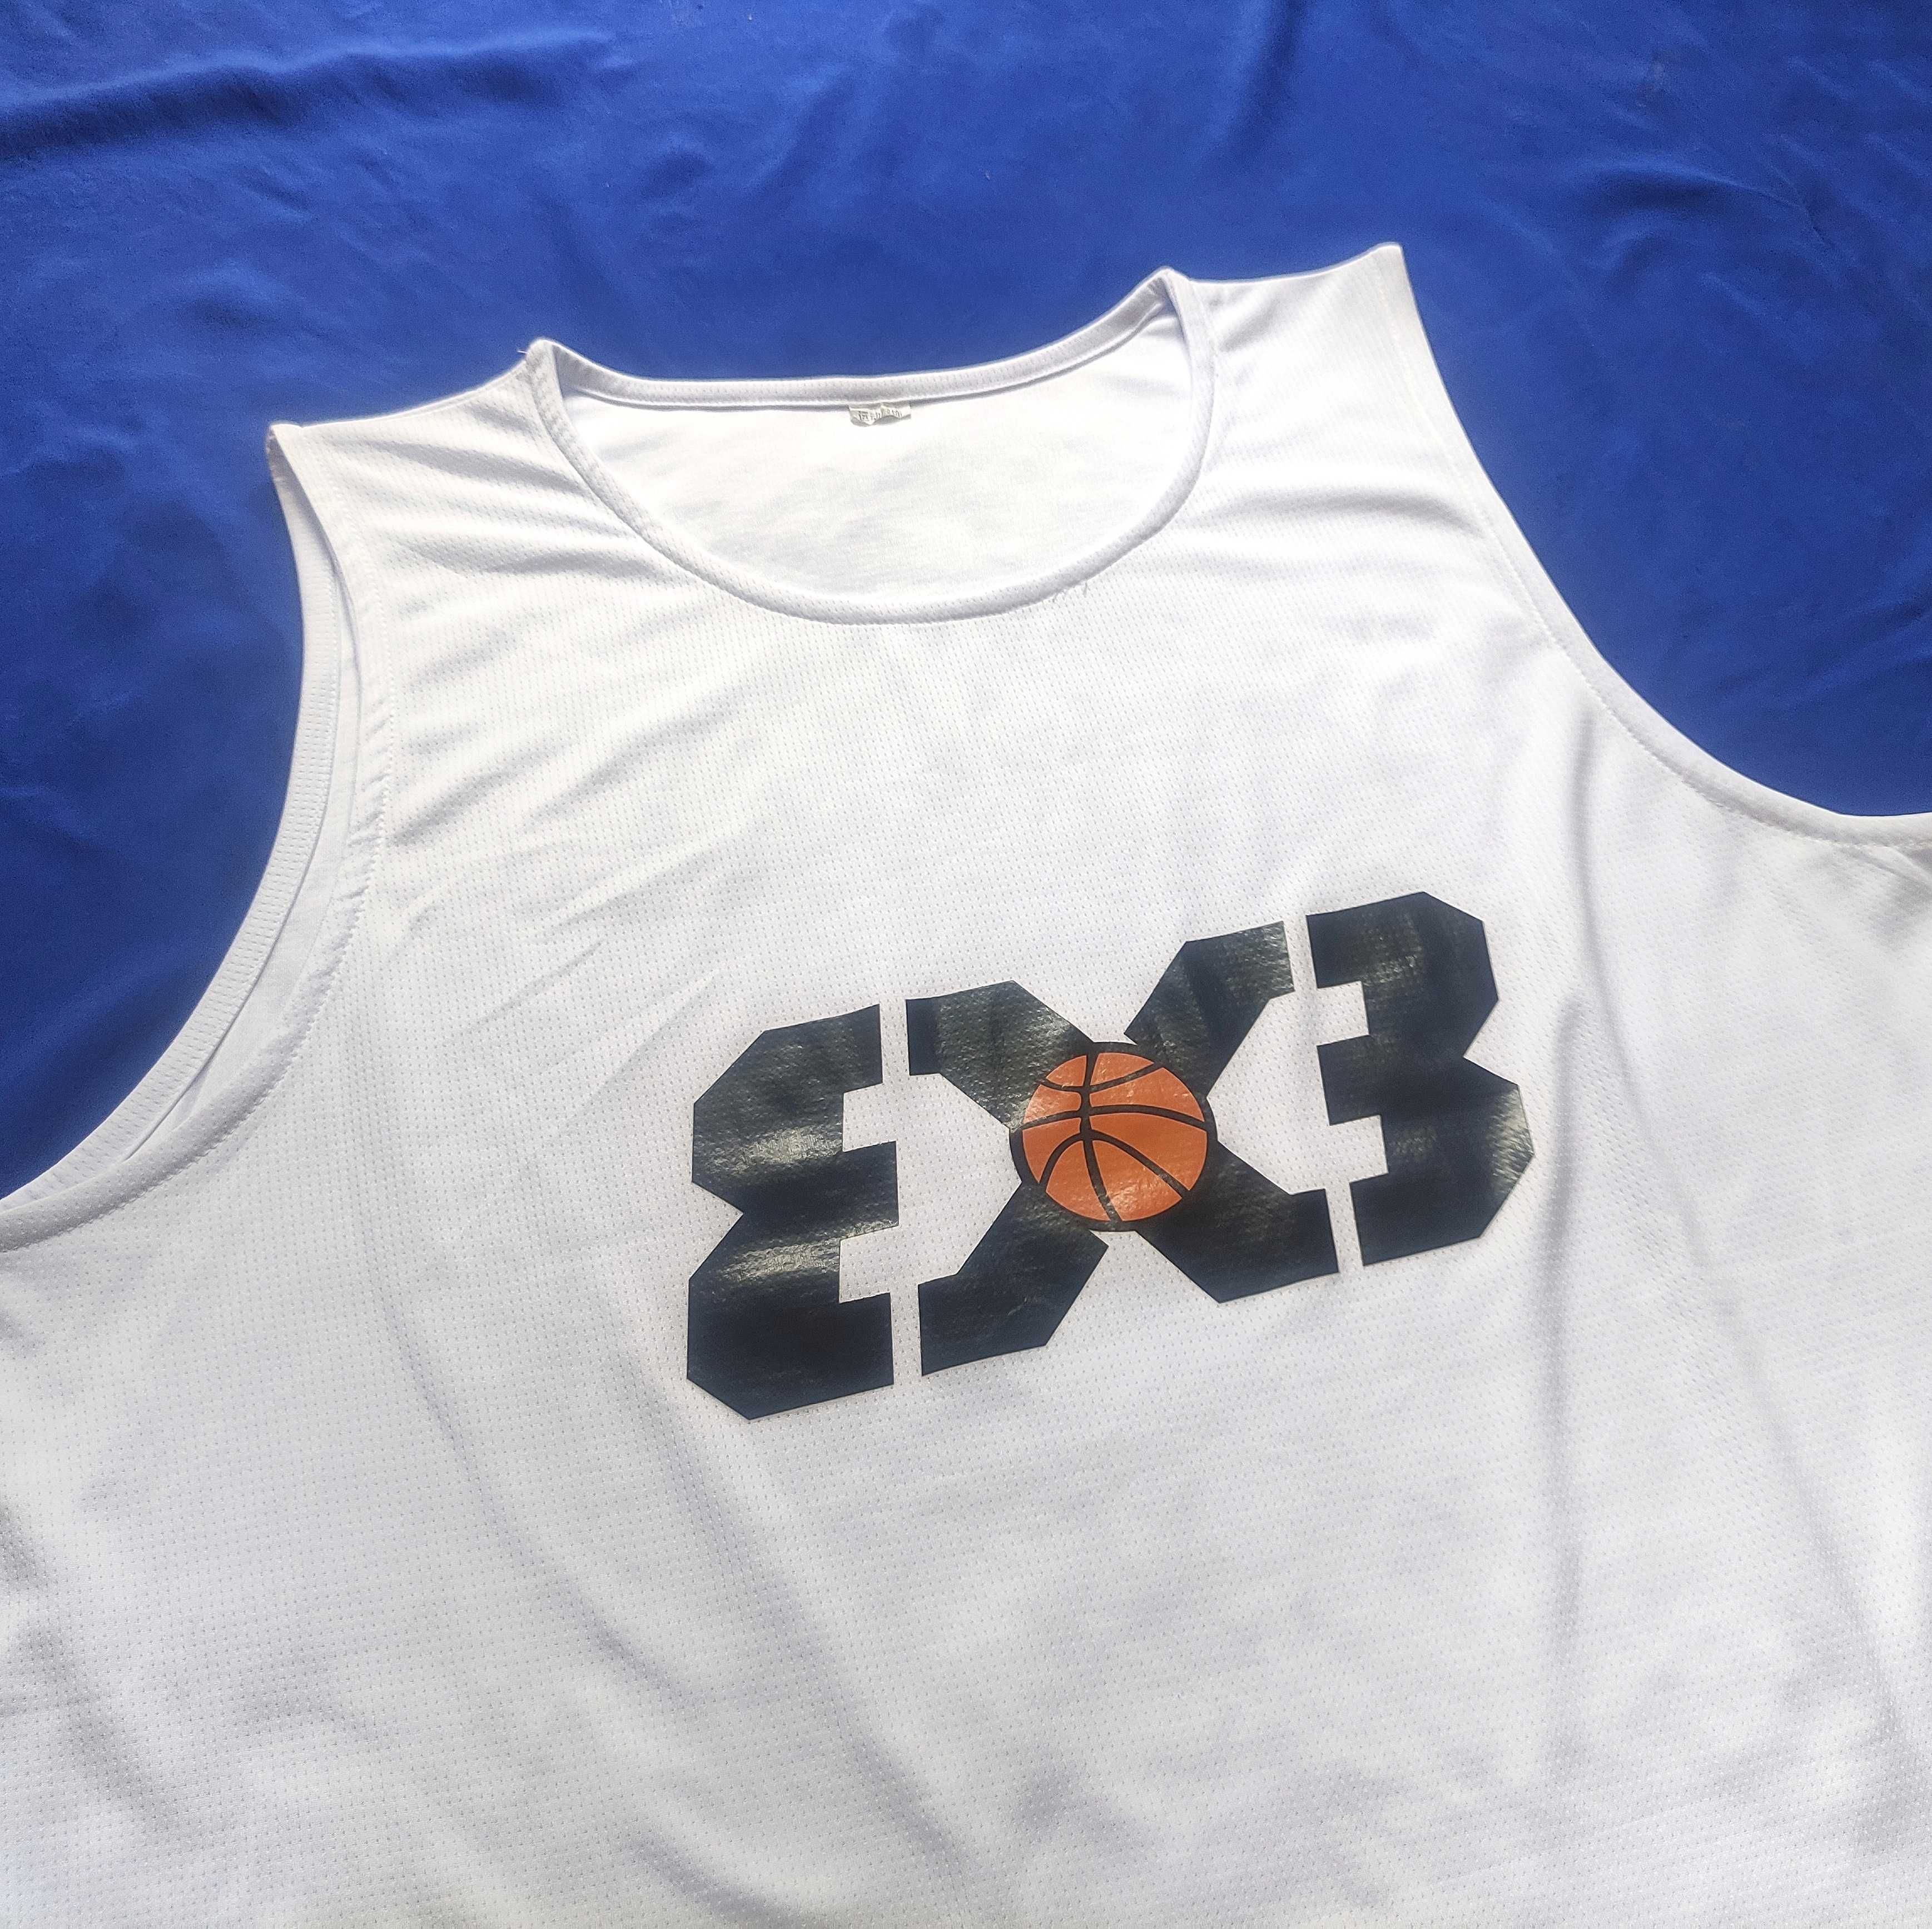 Спортивная Майка 3X3 Basketball. XXXL